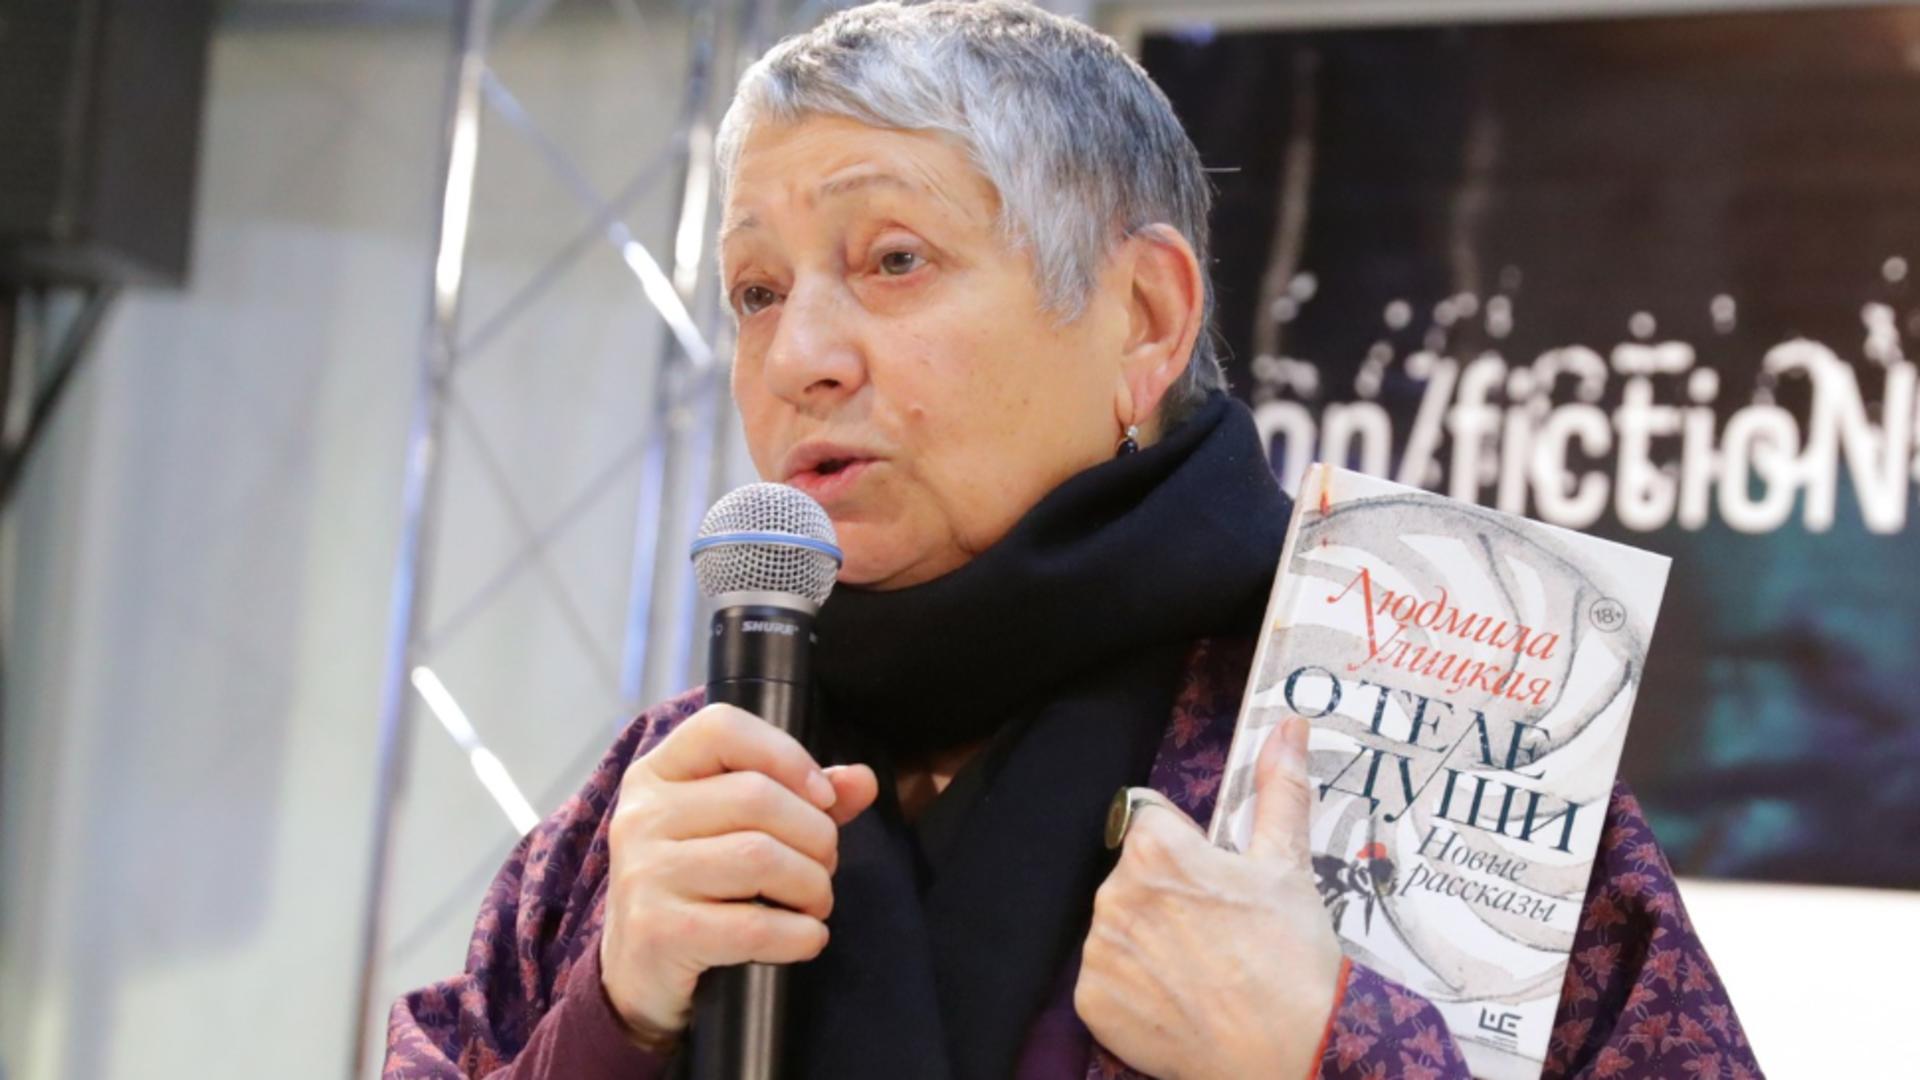 Represiunile lui Putin continuă: Romanciera Ludmila Uliţkaia a fost clasificată drept agent străin